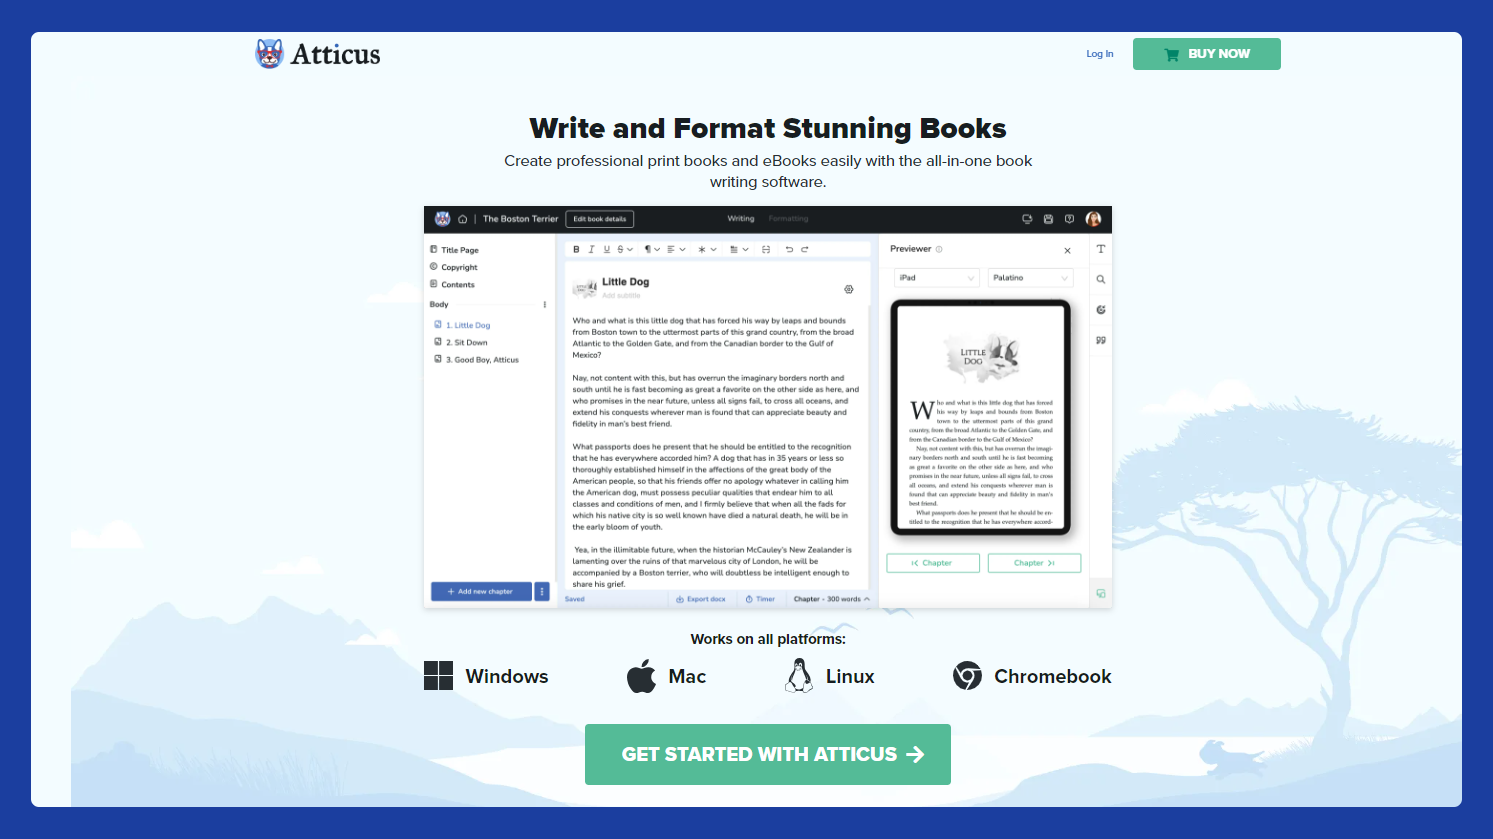 Atticus - Ebook Creating tool